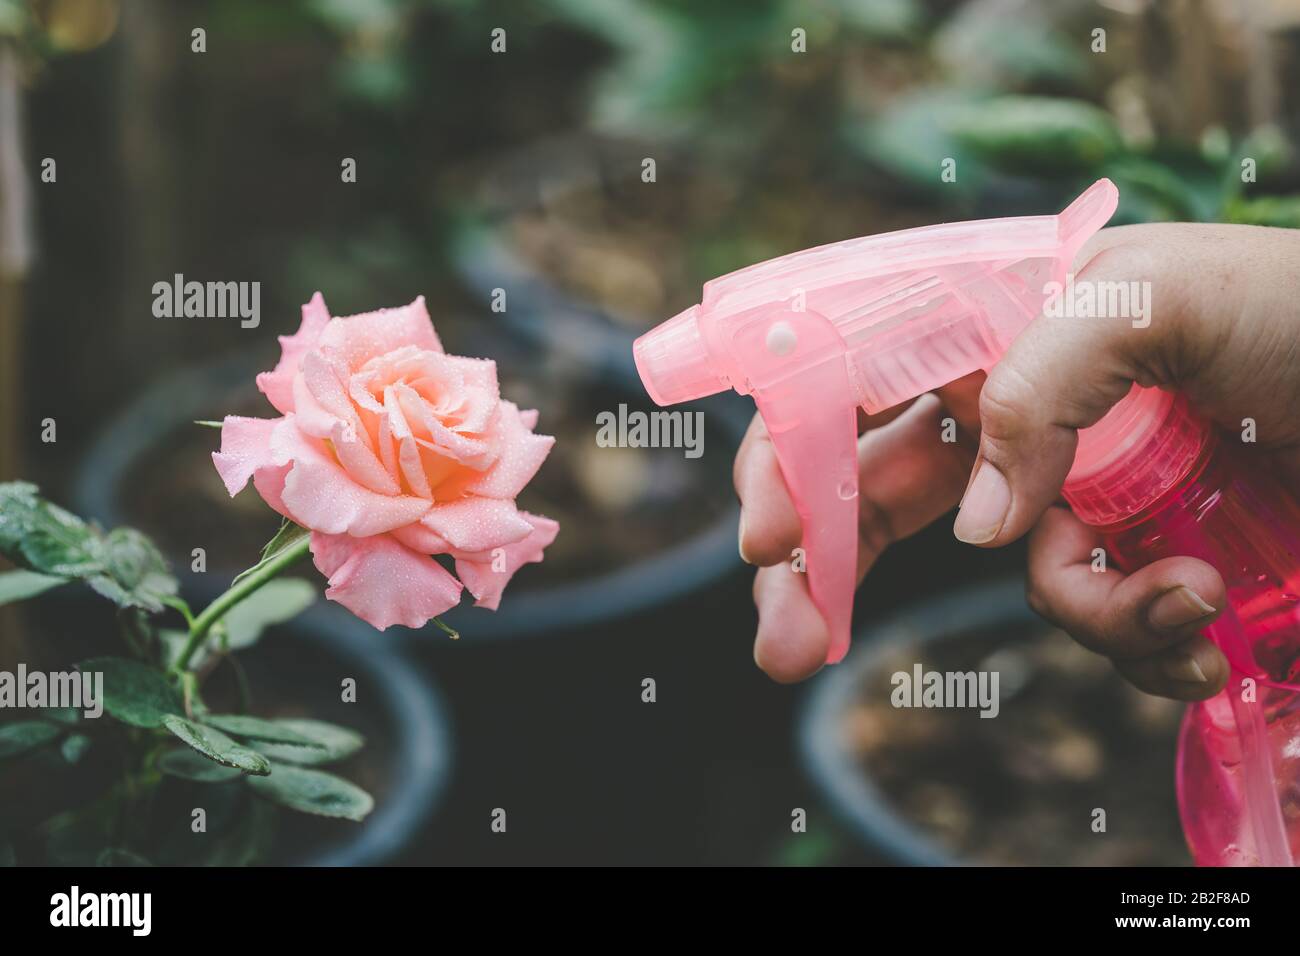 Cerrar la mano sosteniendo la botella de agua y rociar a rosa flor rosa en el jardín. Concepto de jardinería en el hogar Foto de stock